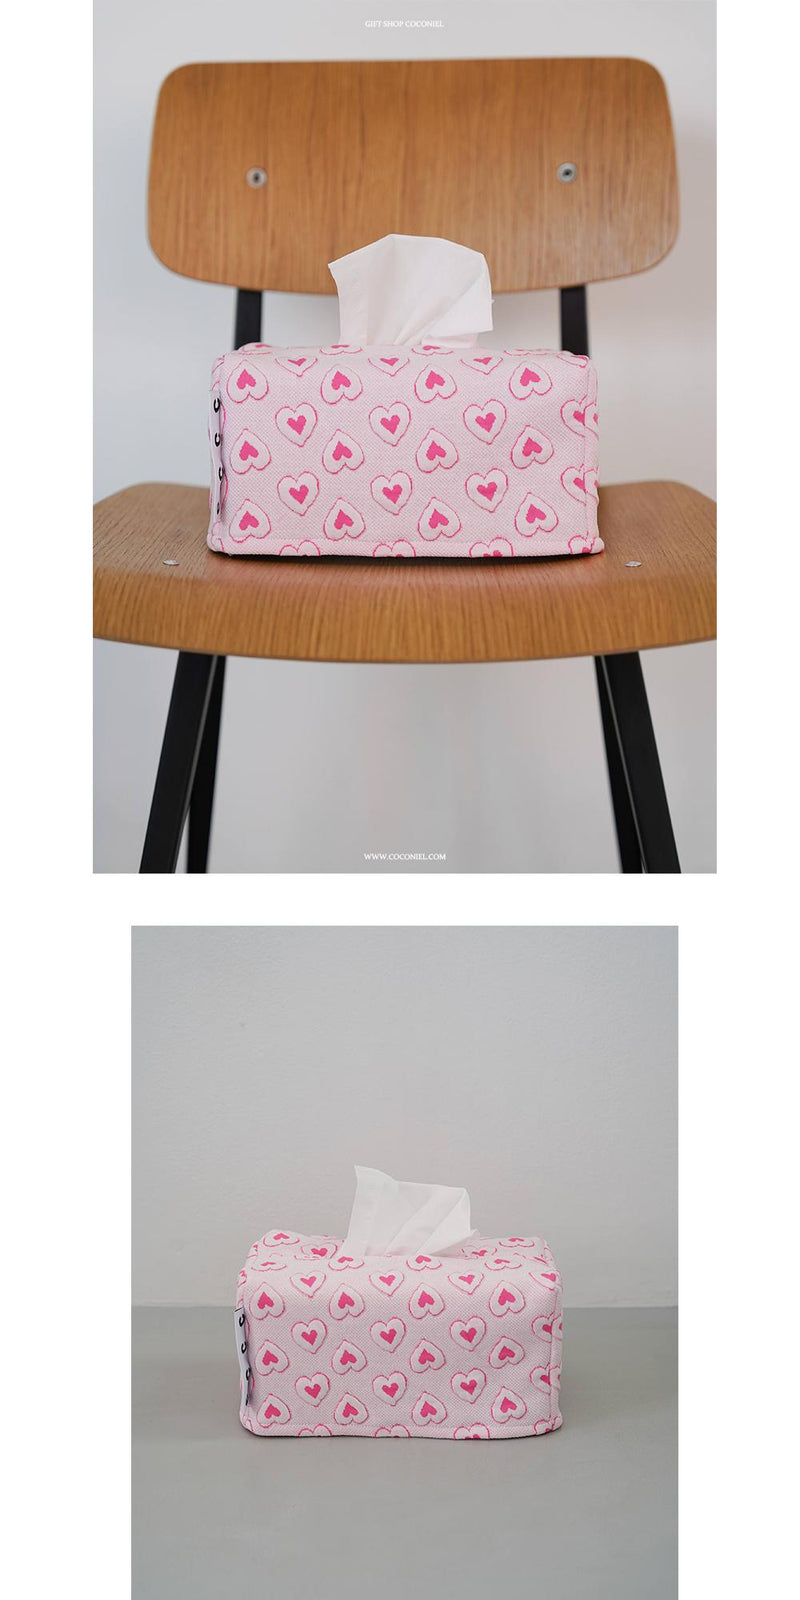 Heart Pink Tissue Case